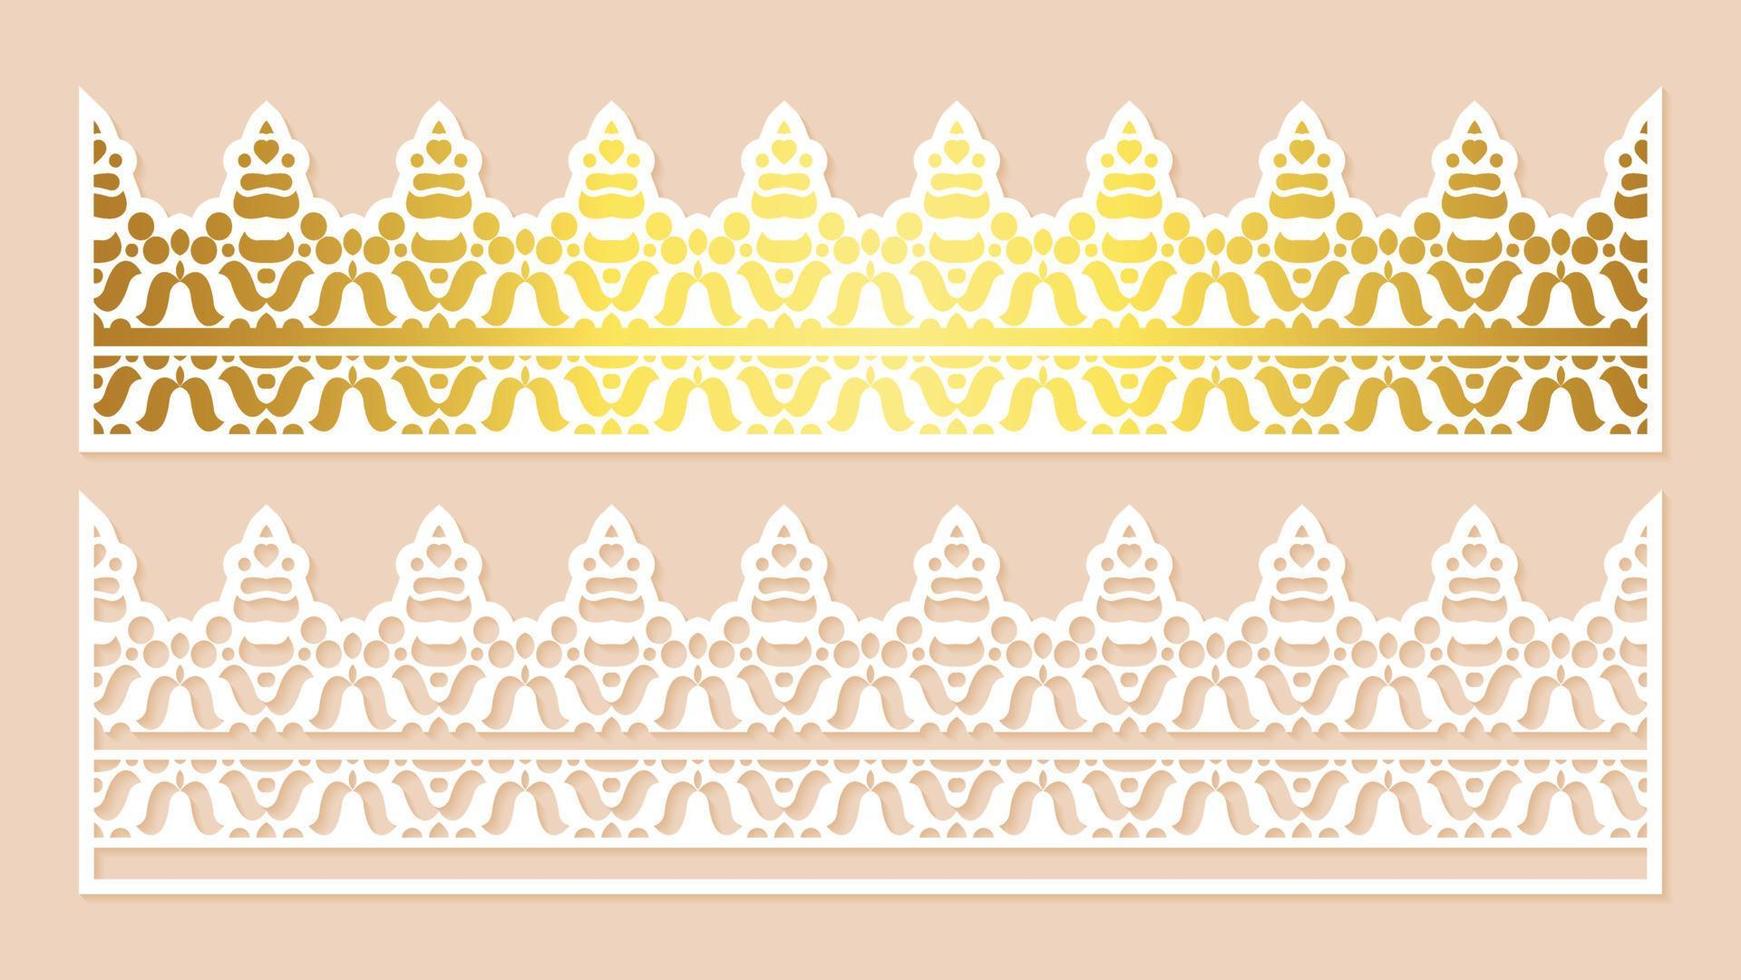 Gold border decorative paper cut lines vector